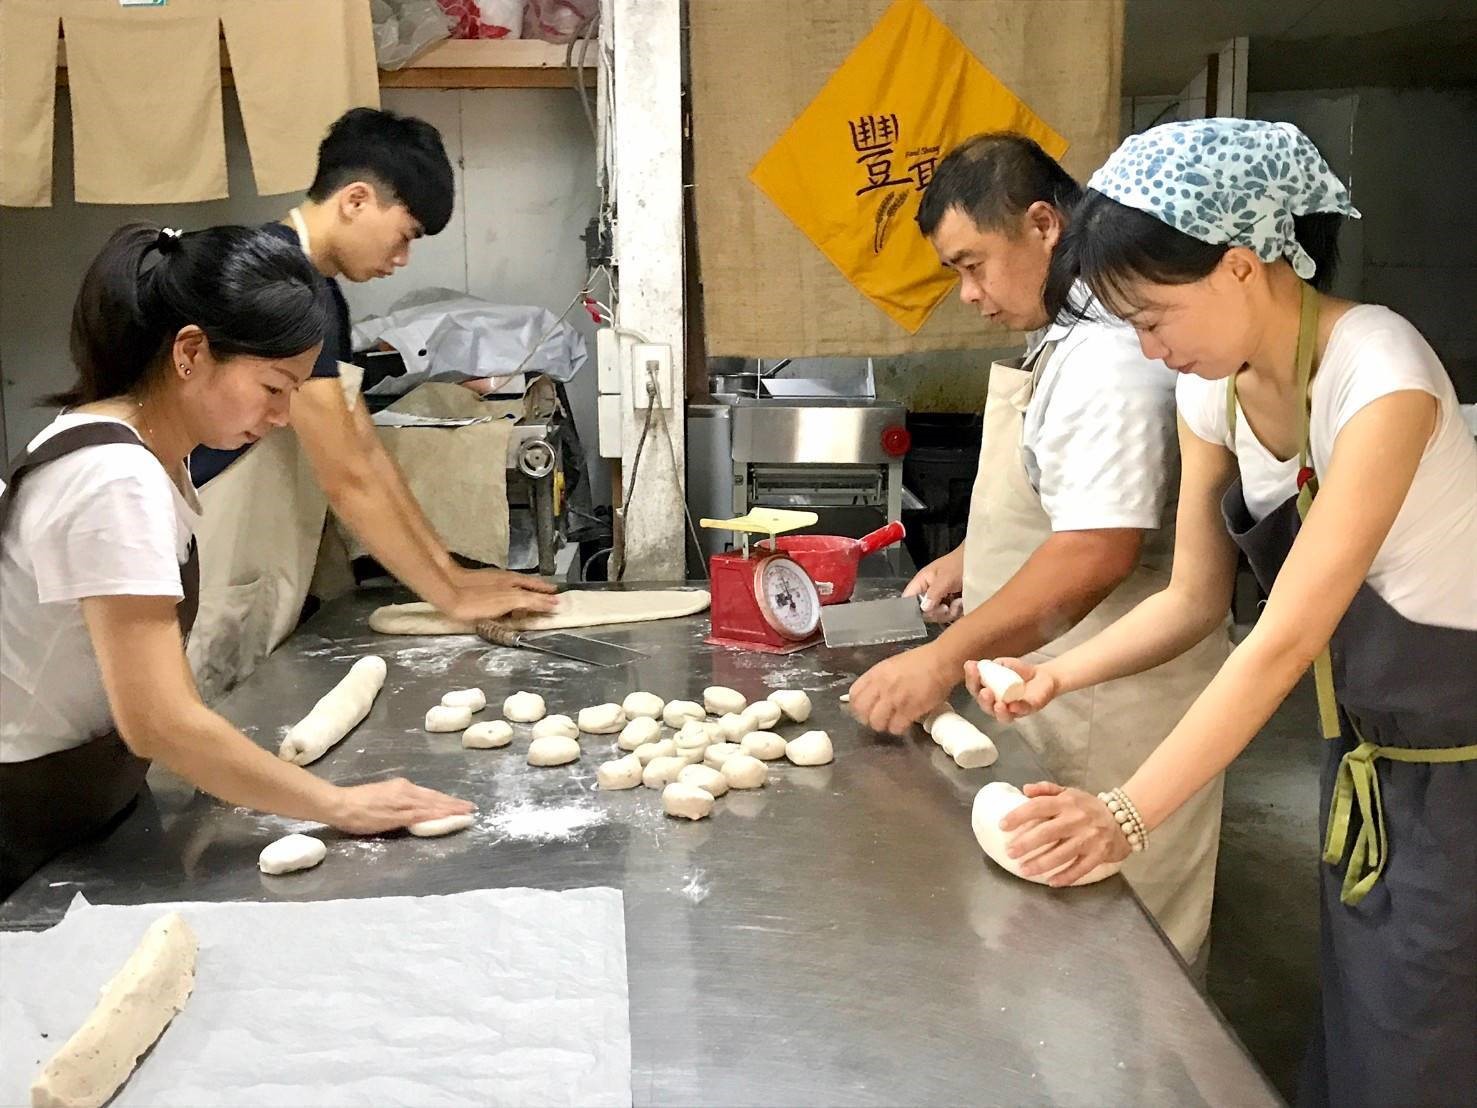 劉嘉玲與家人在製作饅頭的身影